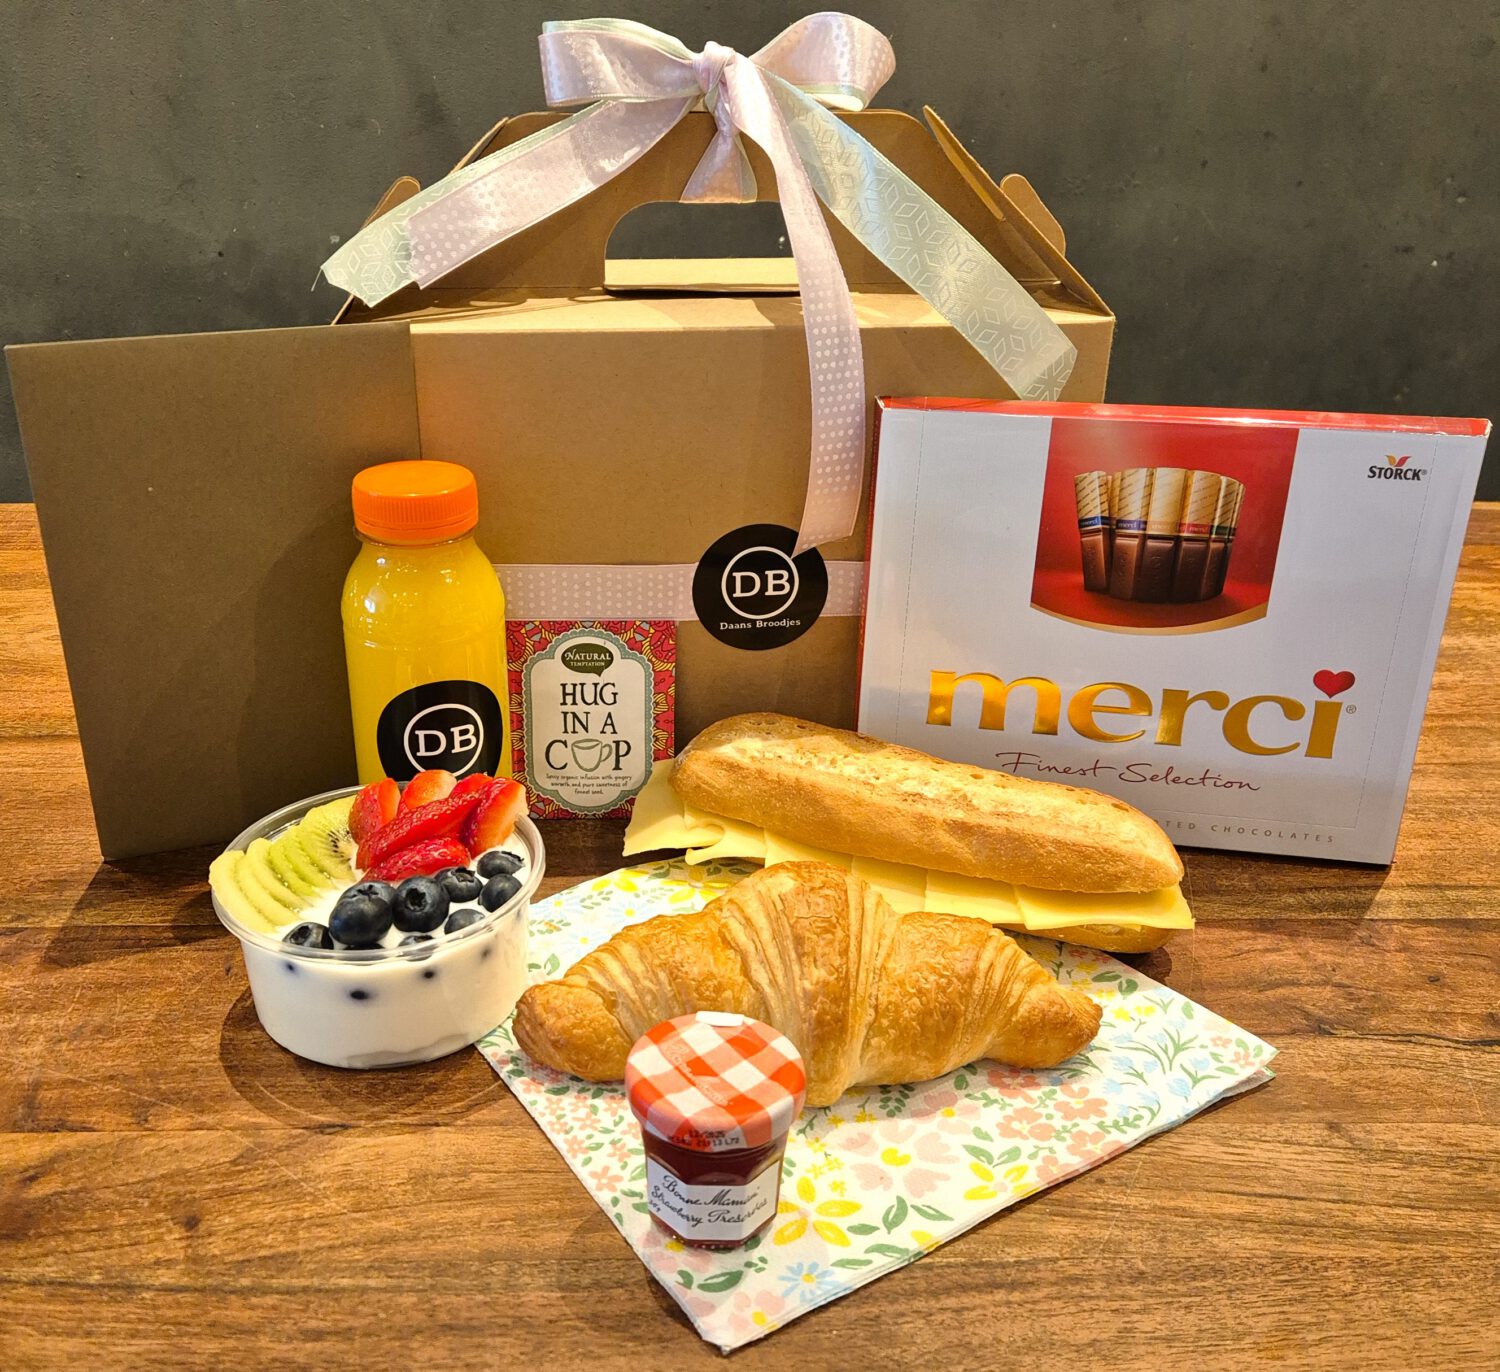 Ontbijtservice box voor moederdag om te laten bezorgen met belegde broodjes, doos merci, verse jus d'orange en yoghurt met fruit